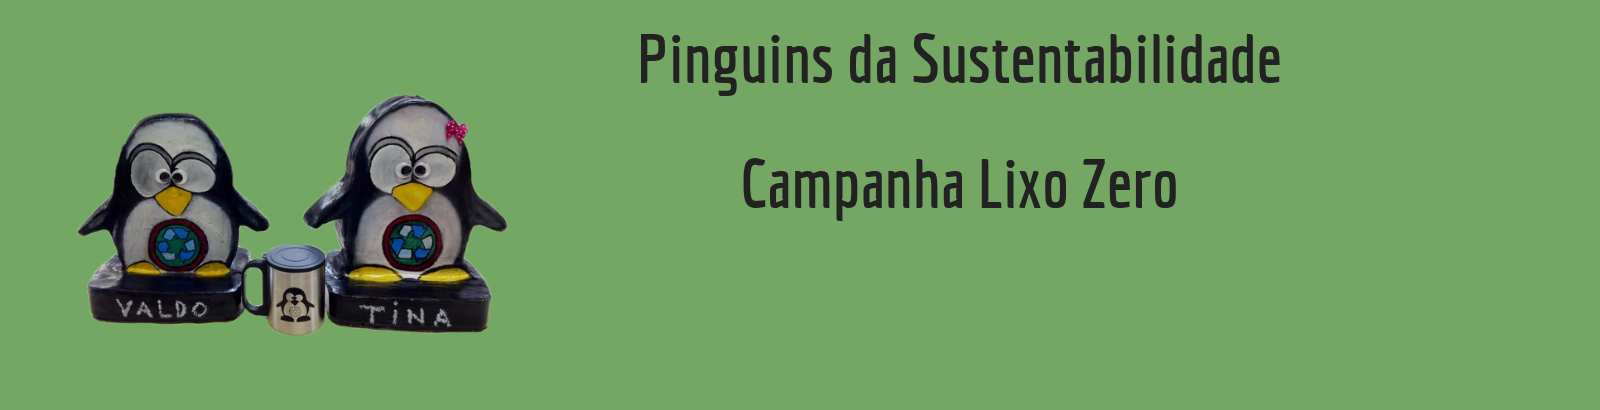 Pinguins da Sustentabilidade – Campanha Lixo Zero